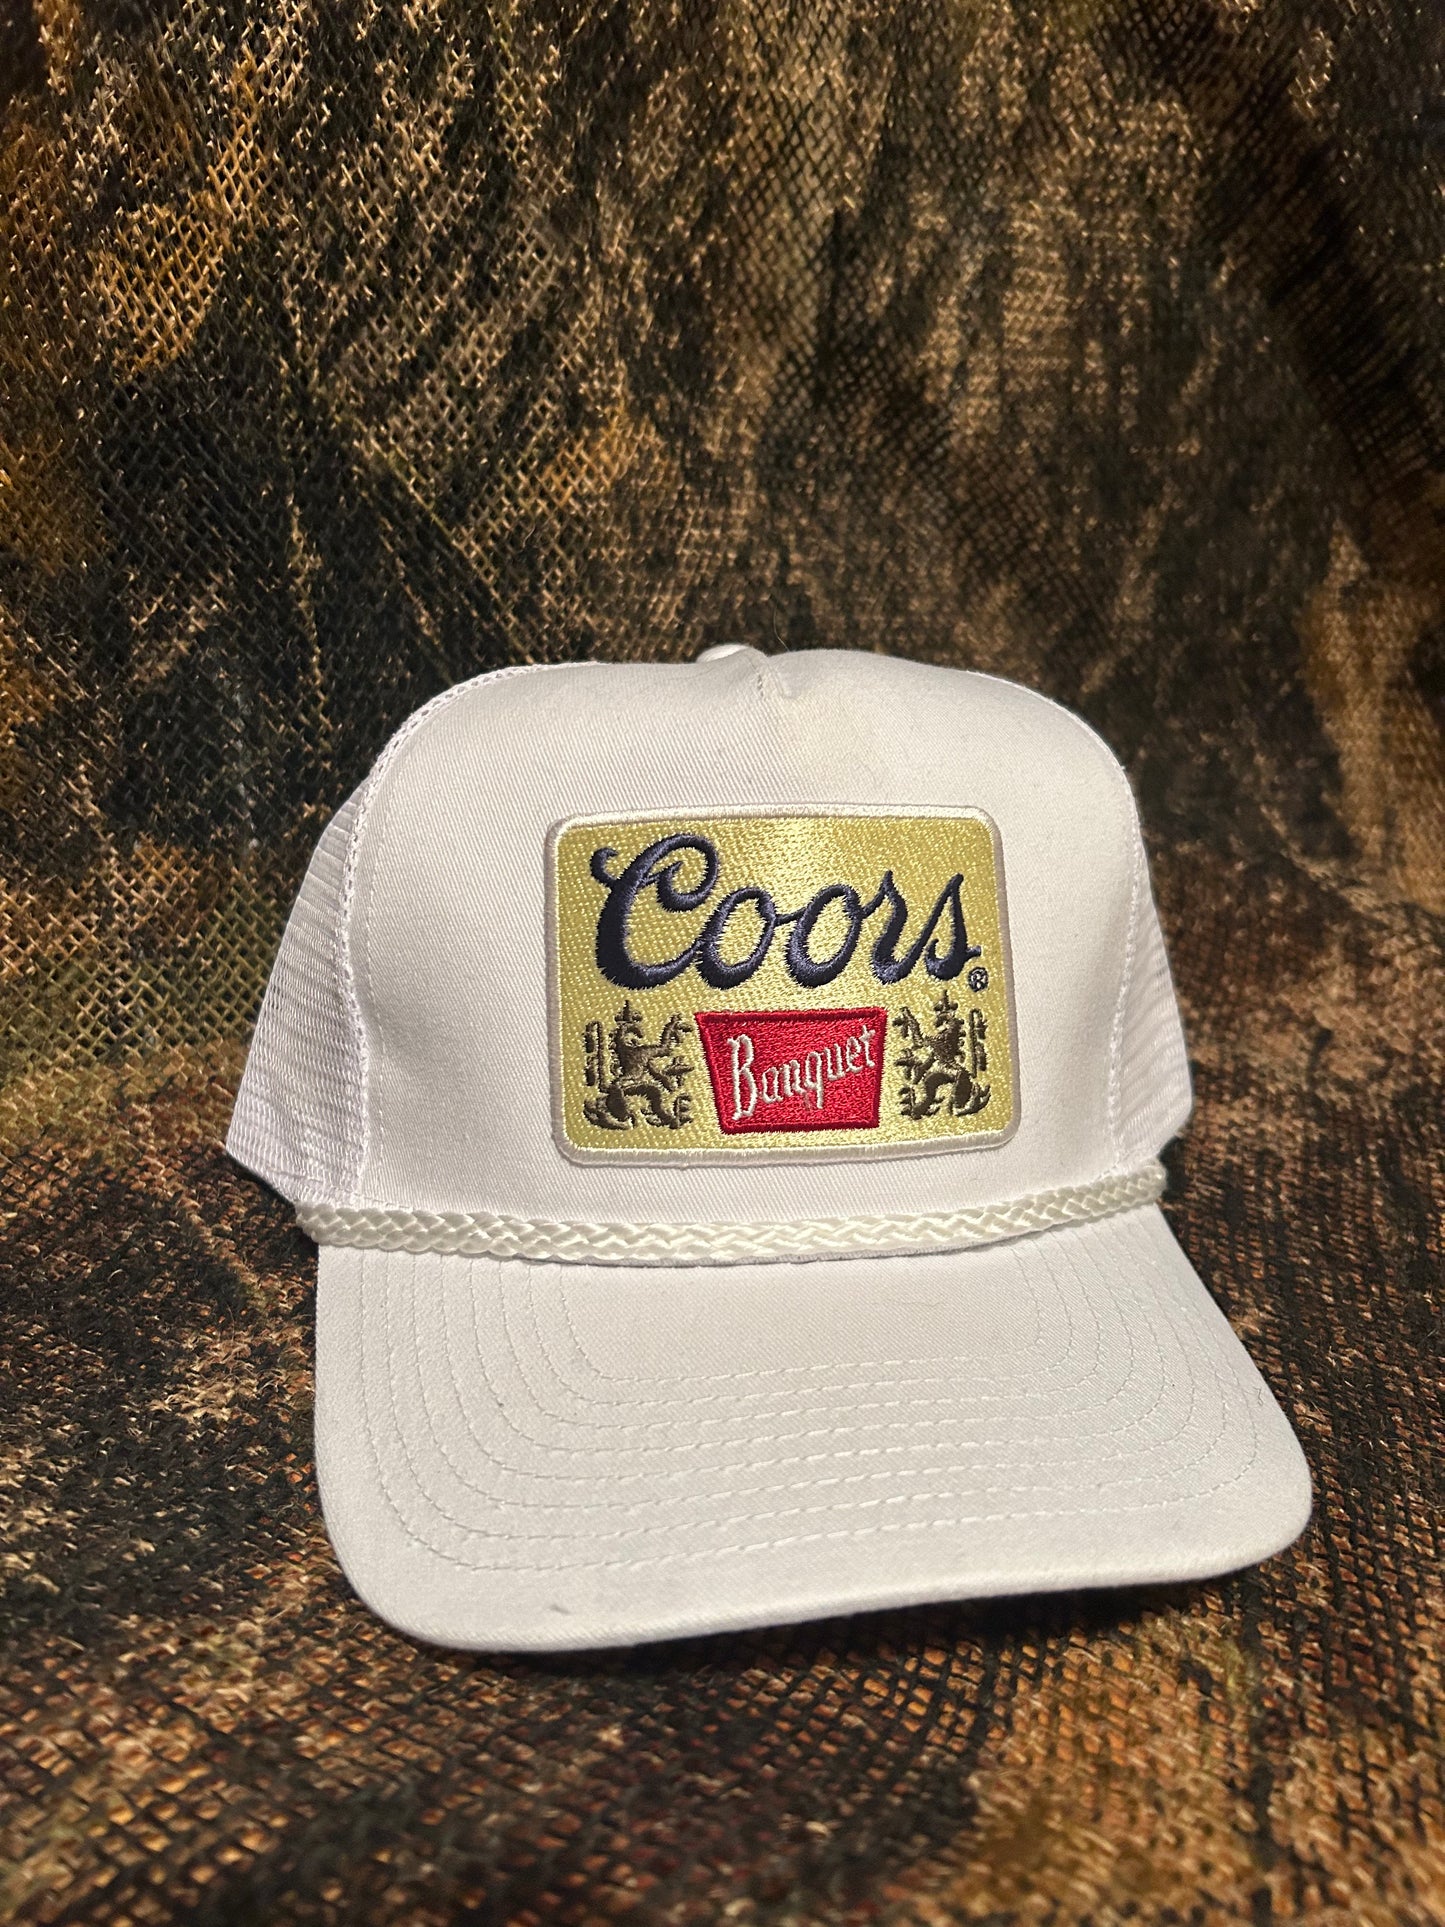 Coors Banquet white rope-brim trucker hat